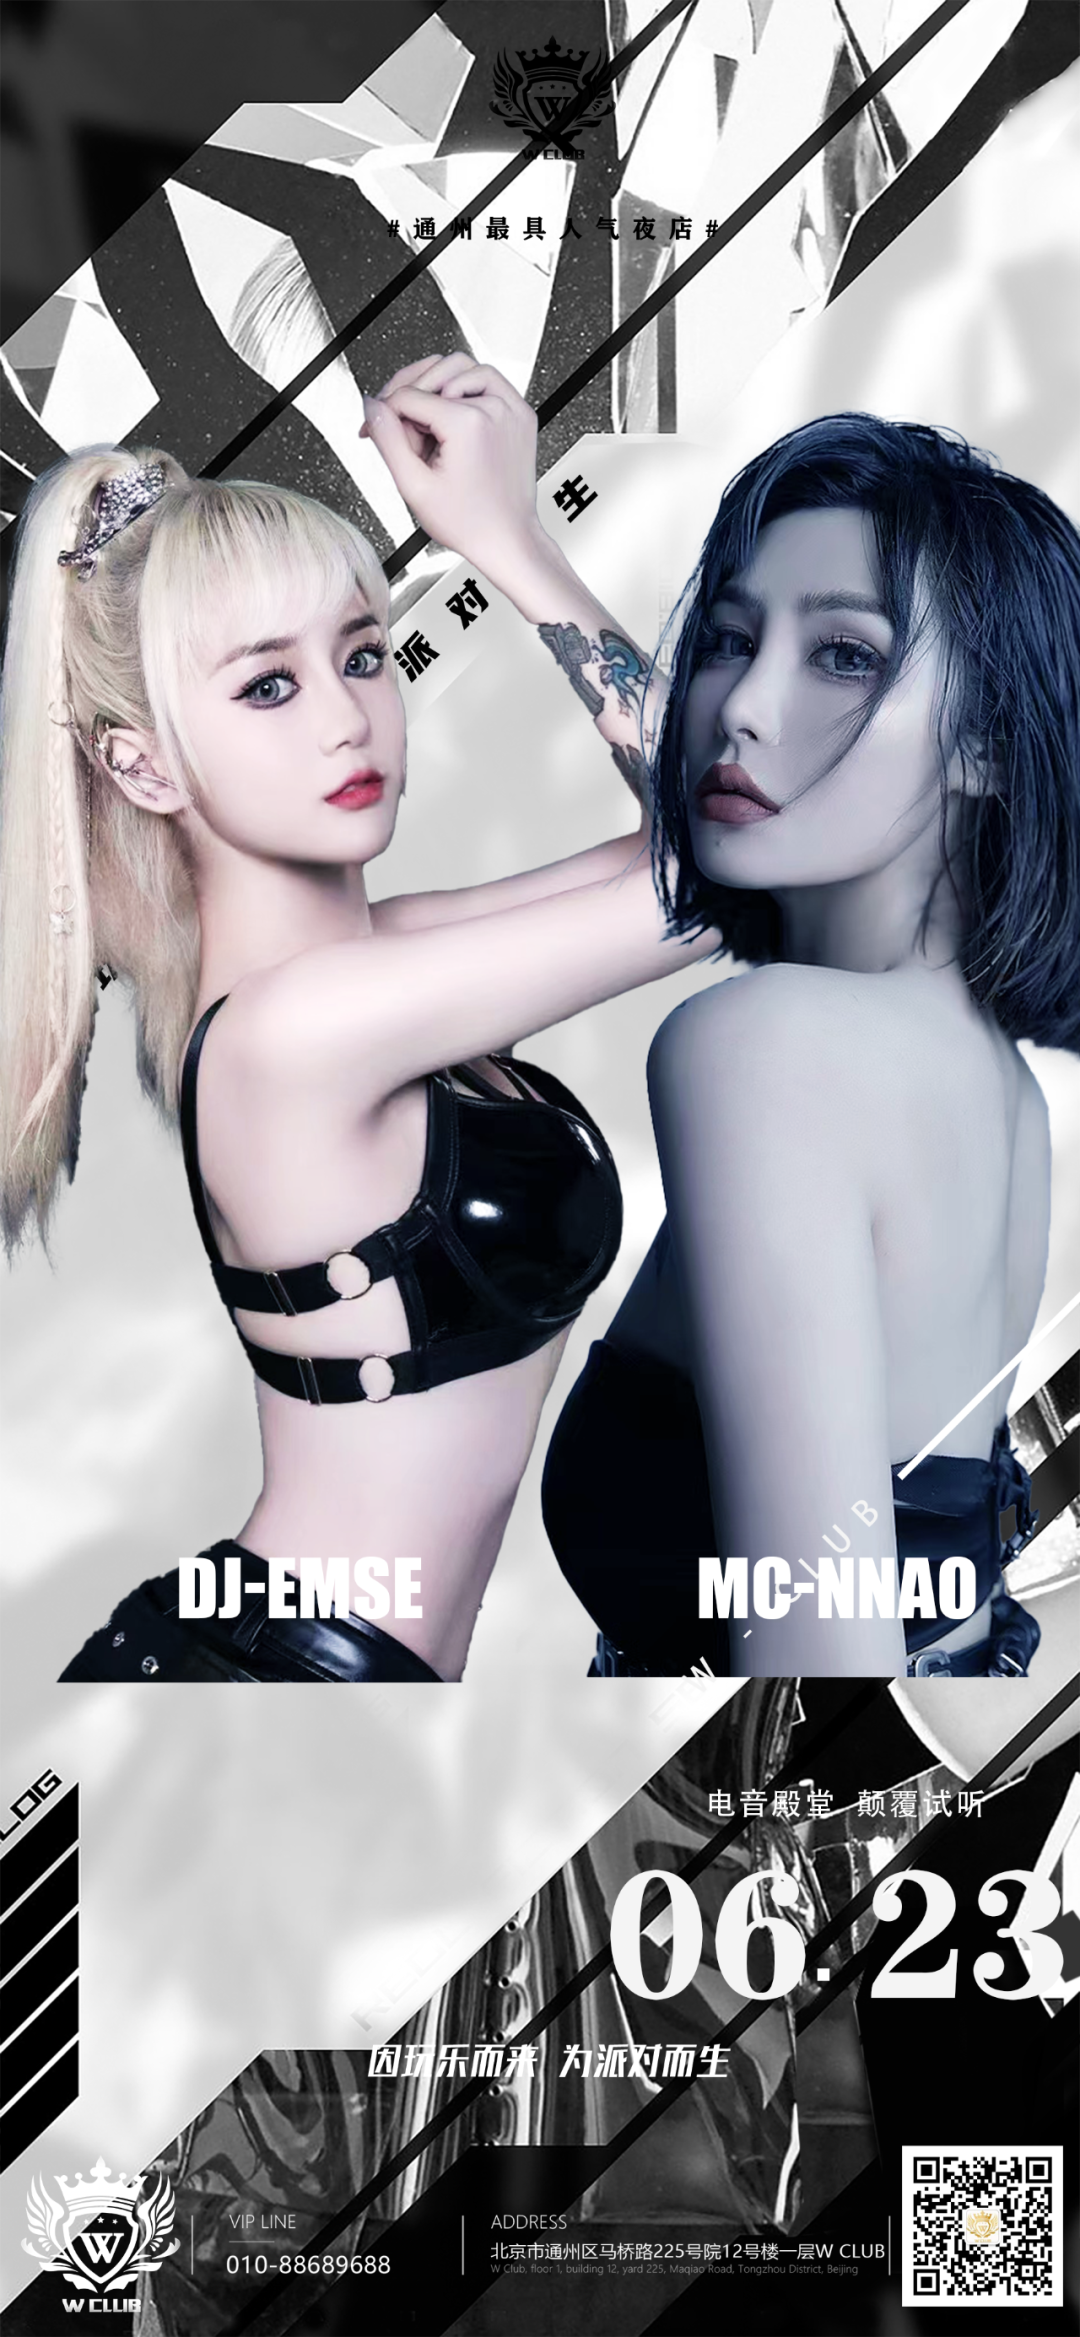 北京W-CLUB6月23日/DJ-EMSE MC-N NAO重磅嘉宾来袭 掀起W-CLUB超强音浪-北京W酒吧/WCLUB